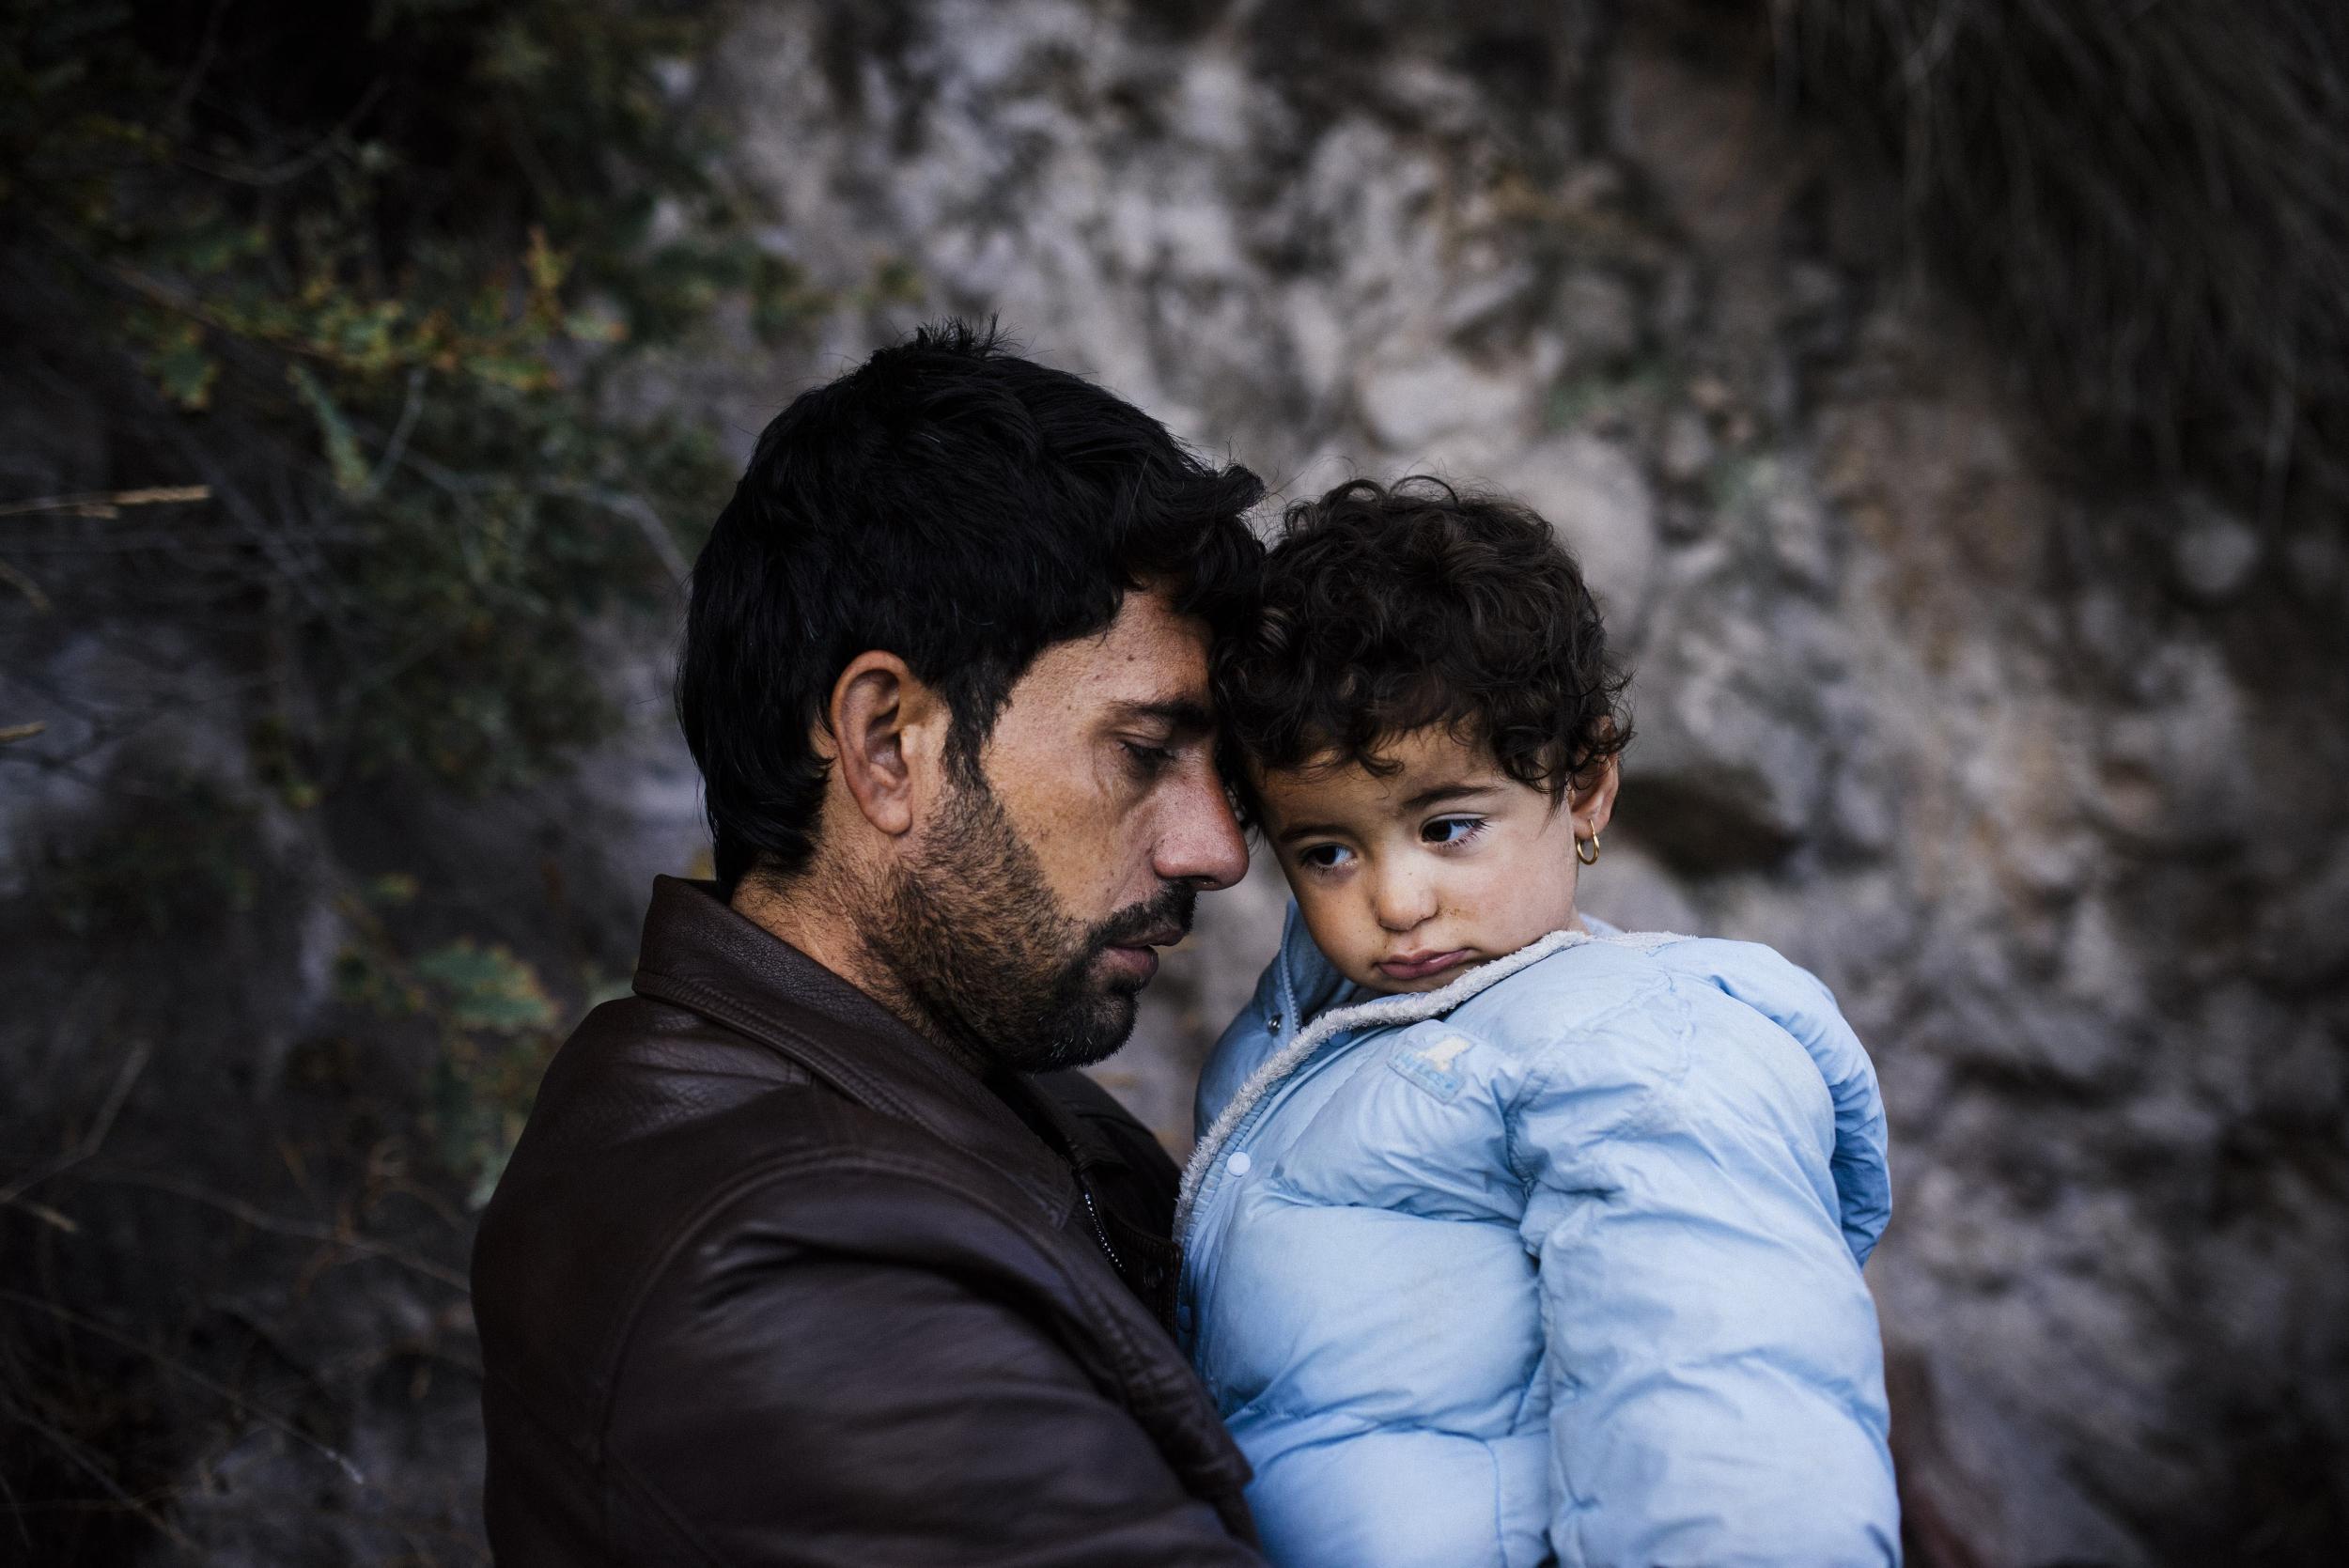 Around 24,000 unaccompanied children applied for asylum in Europe last year